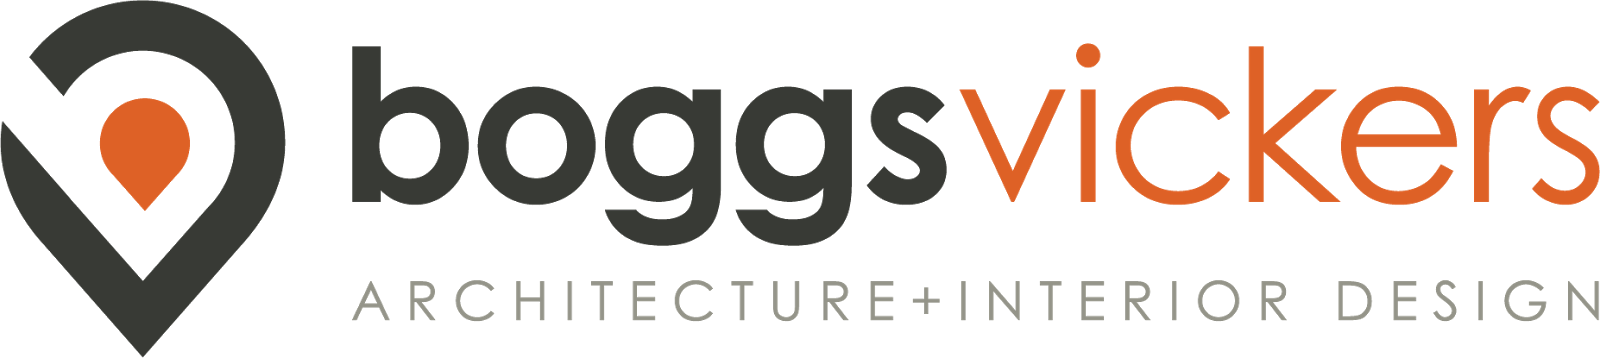 BoggsVickers Architecture + Interior Design